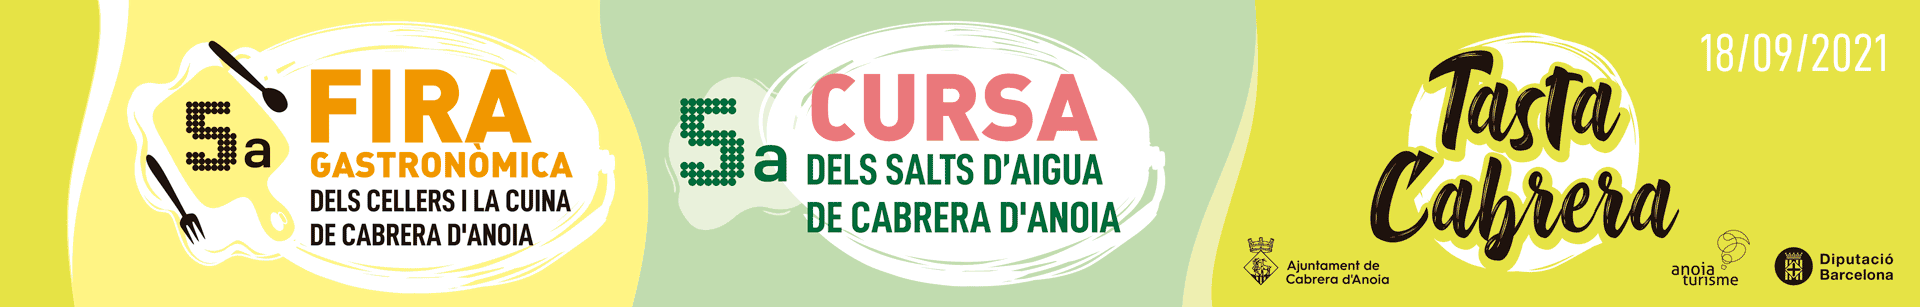 Banner-Tasta-Cabrera-2021